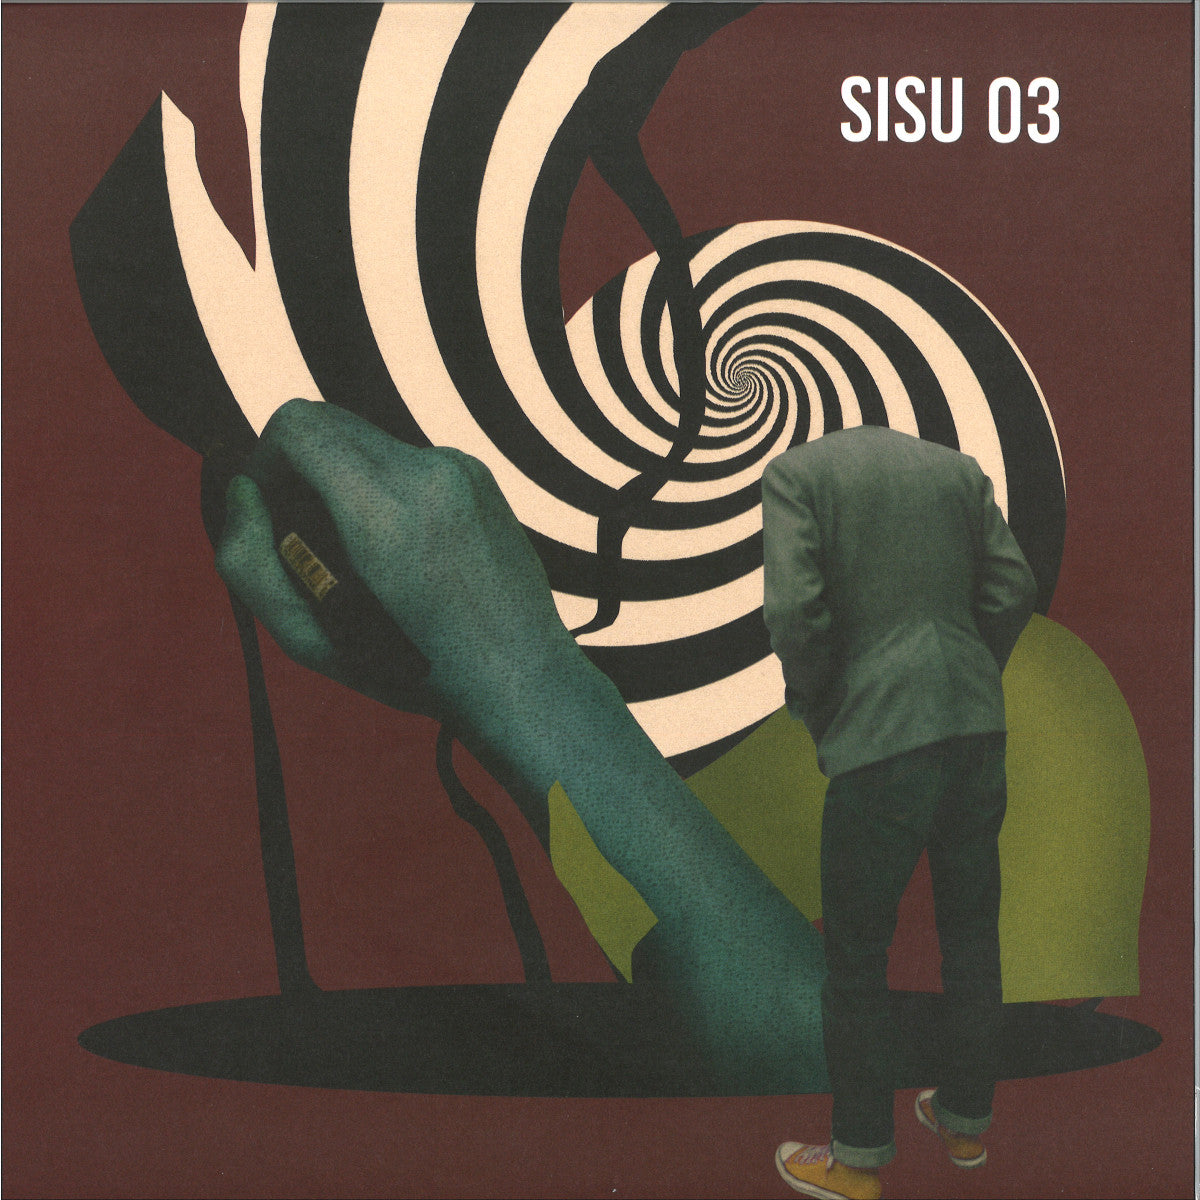 SISU 03